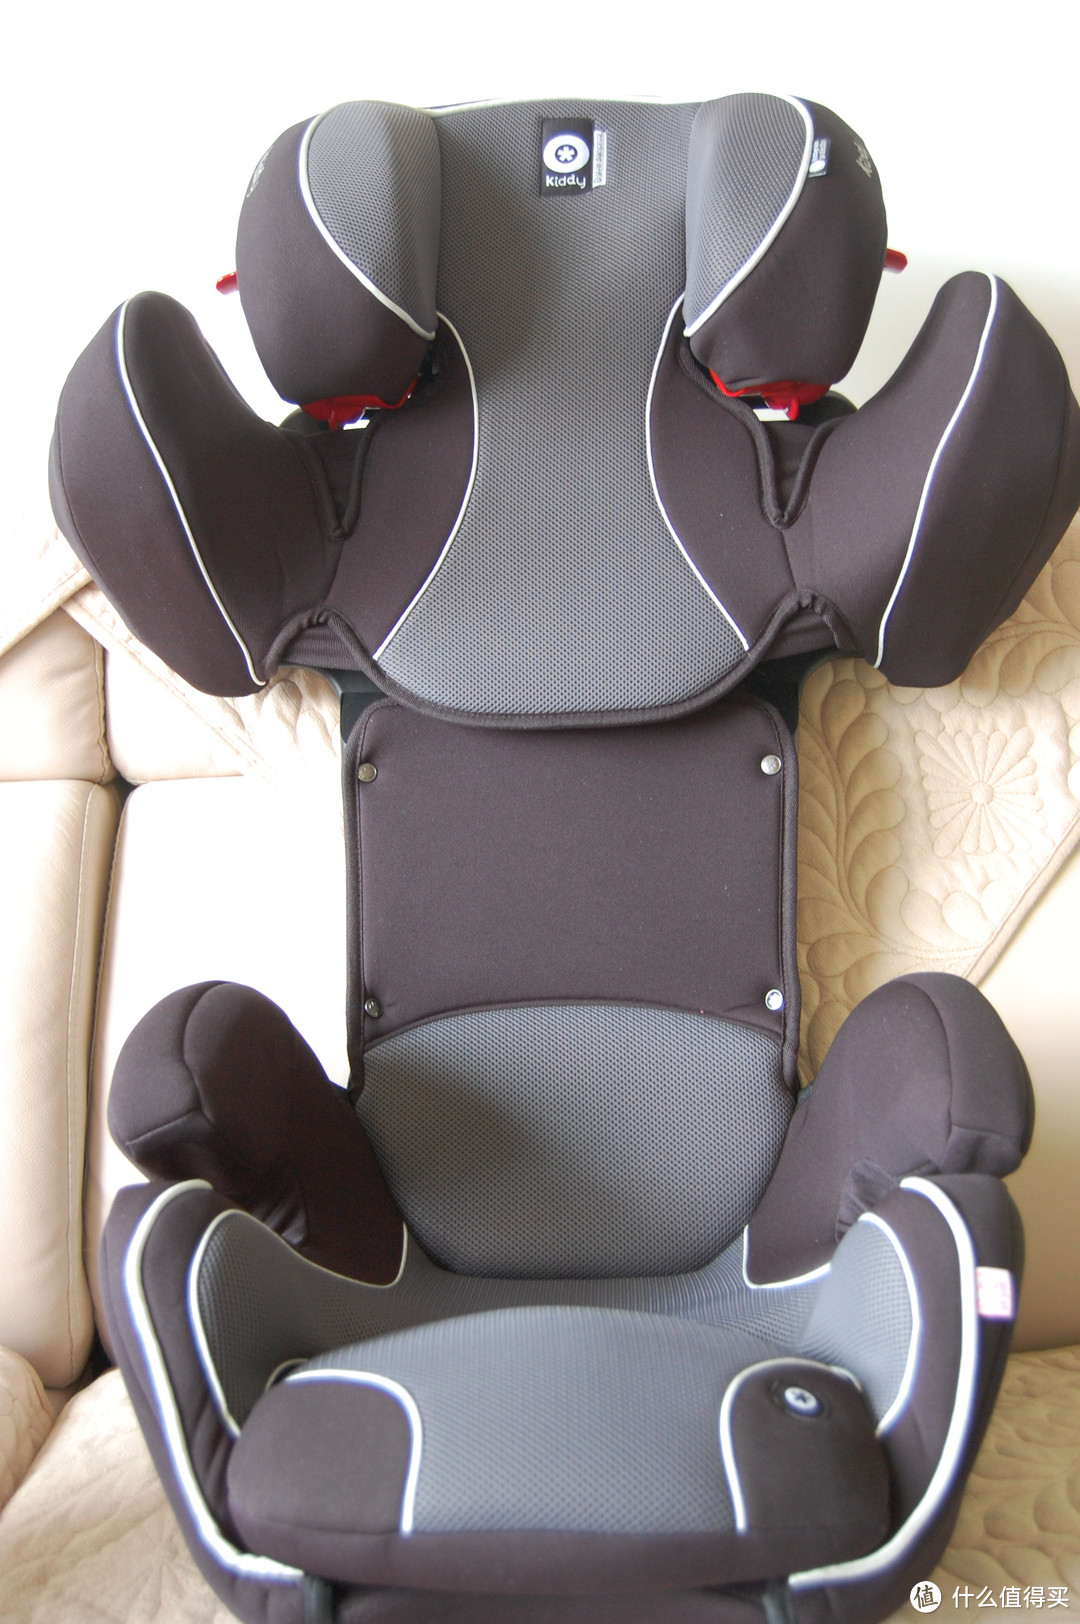 中亚入手 Kiddy 奇蒂 guardianpro2 守护者2代 系列 儿童汽车安全座椅